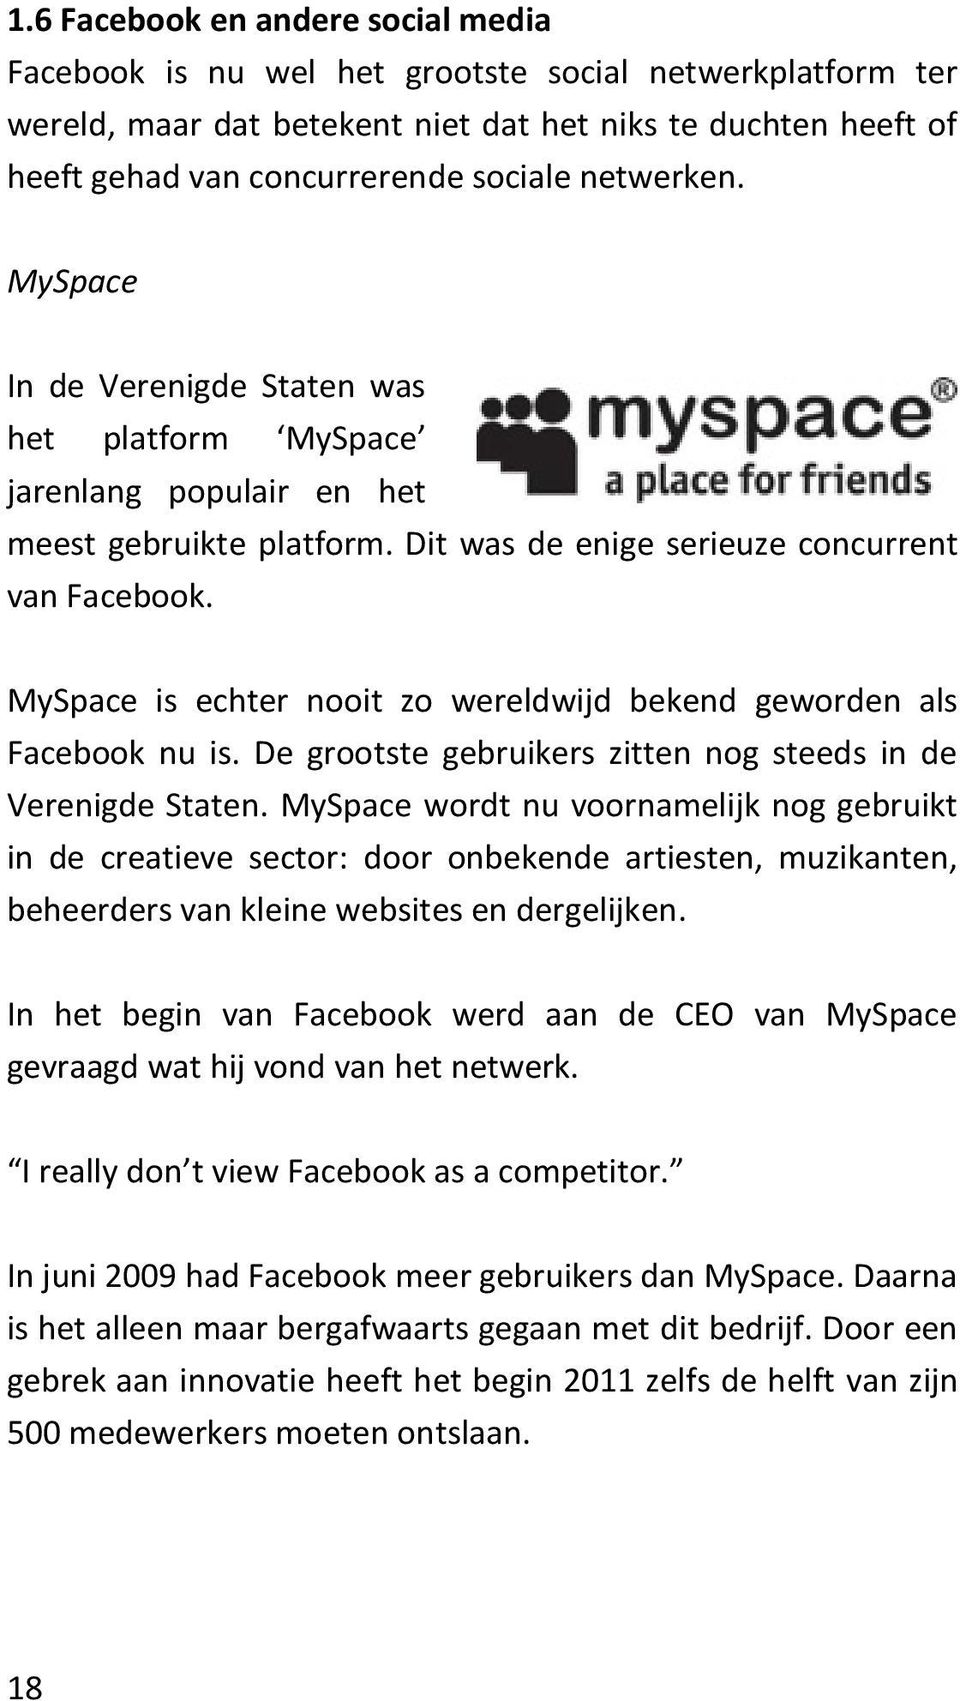 MySpace is echter nooit zo wereldwijd bekend geworden als Facebook nu is. De grootste gebruikers zitten nog steeds in de Verenigde Staten.